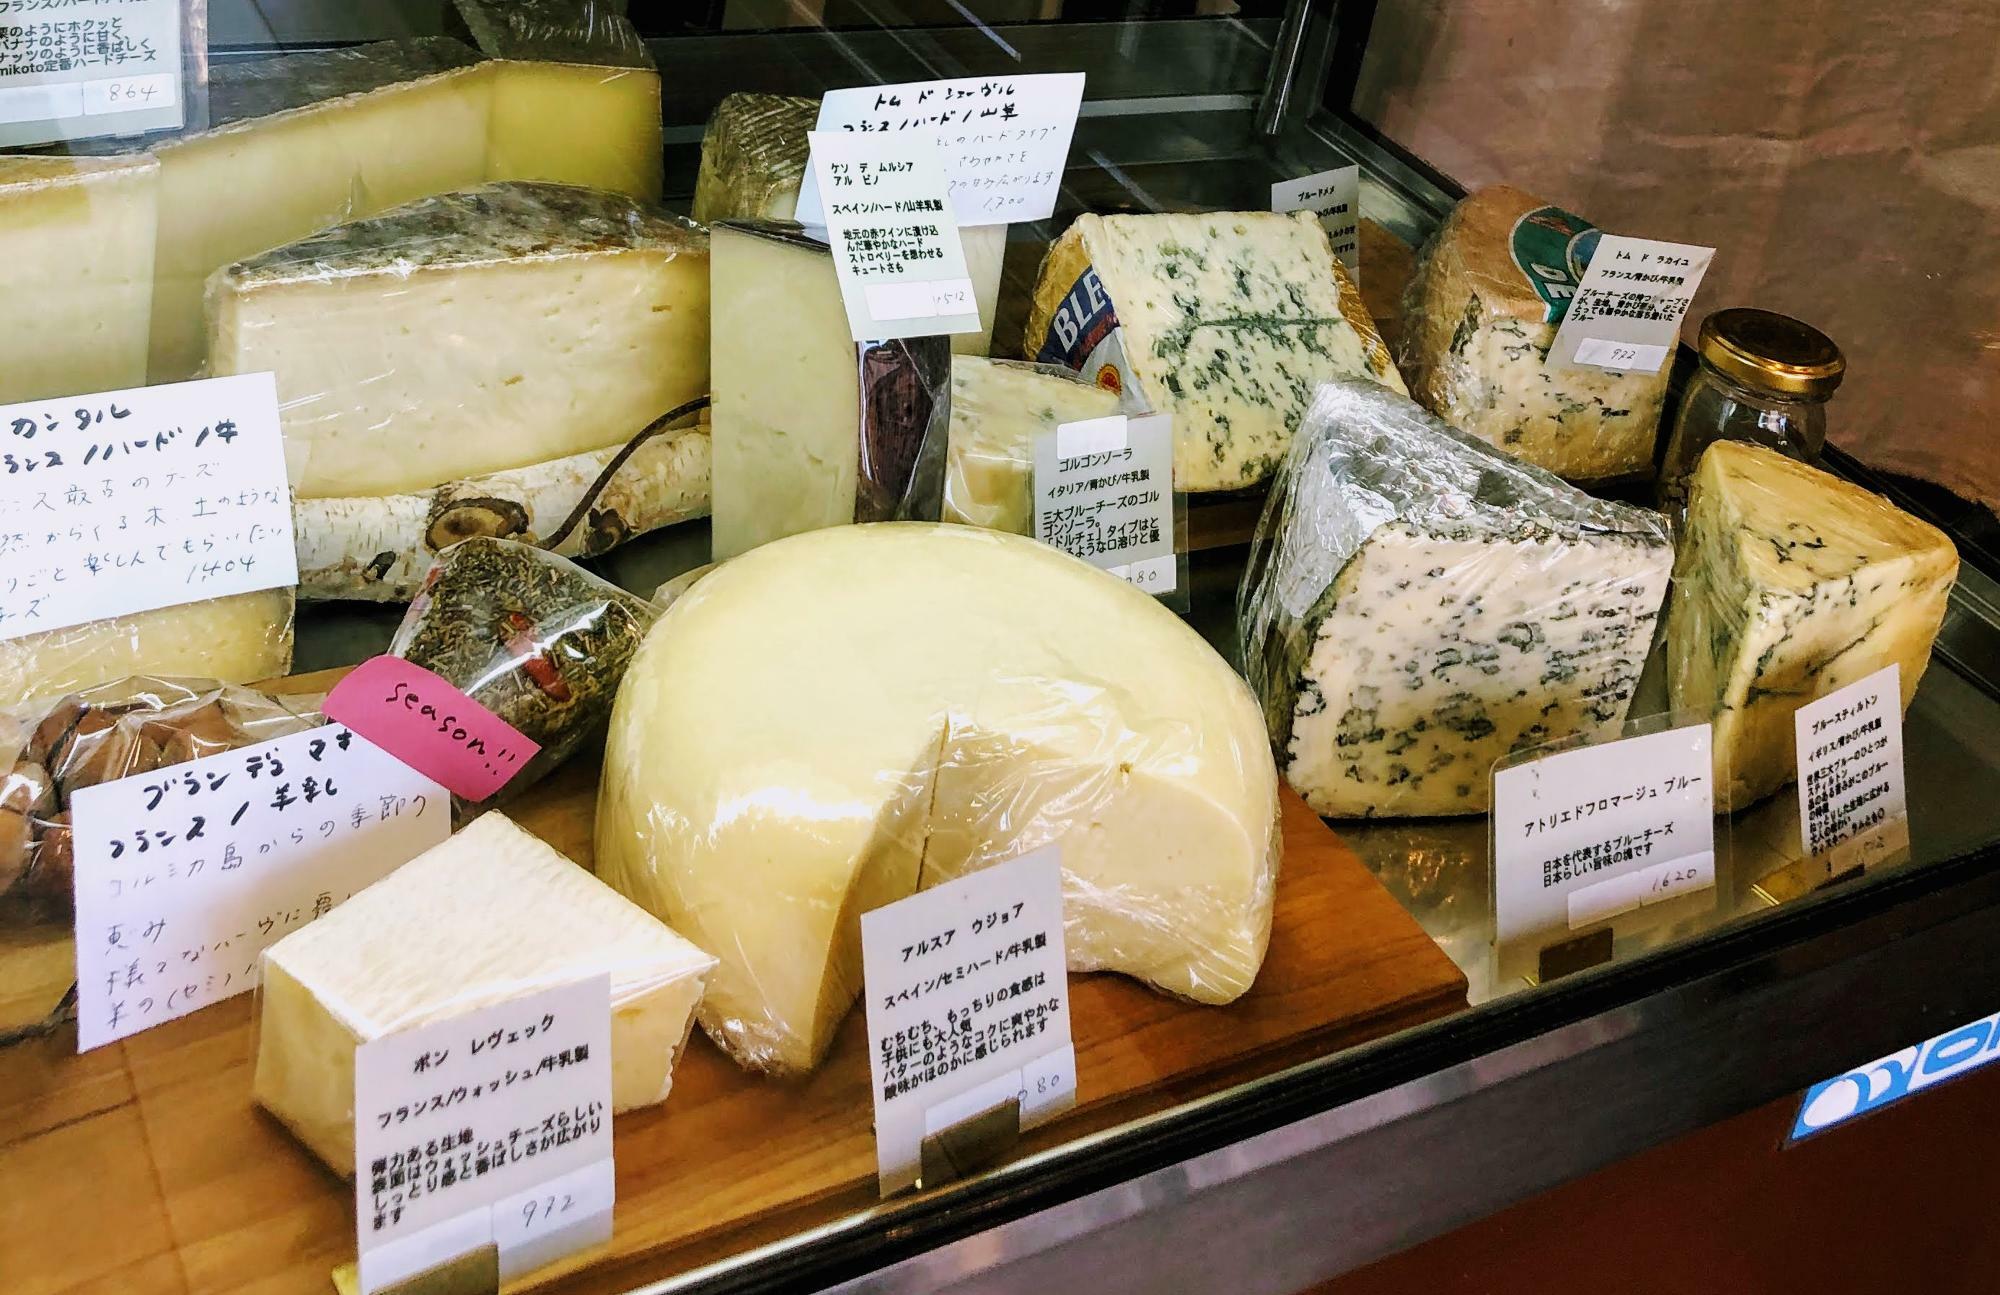 旬のチーズには「Season!」とラベルが貼られていることも